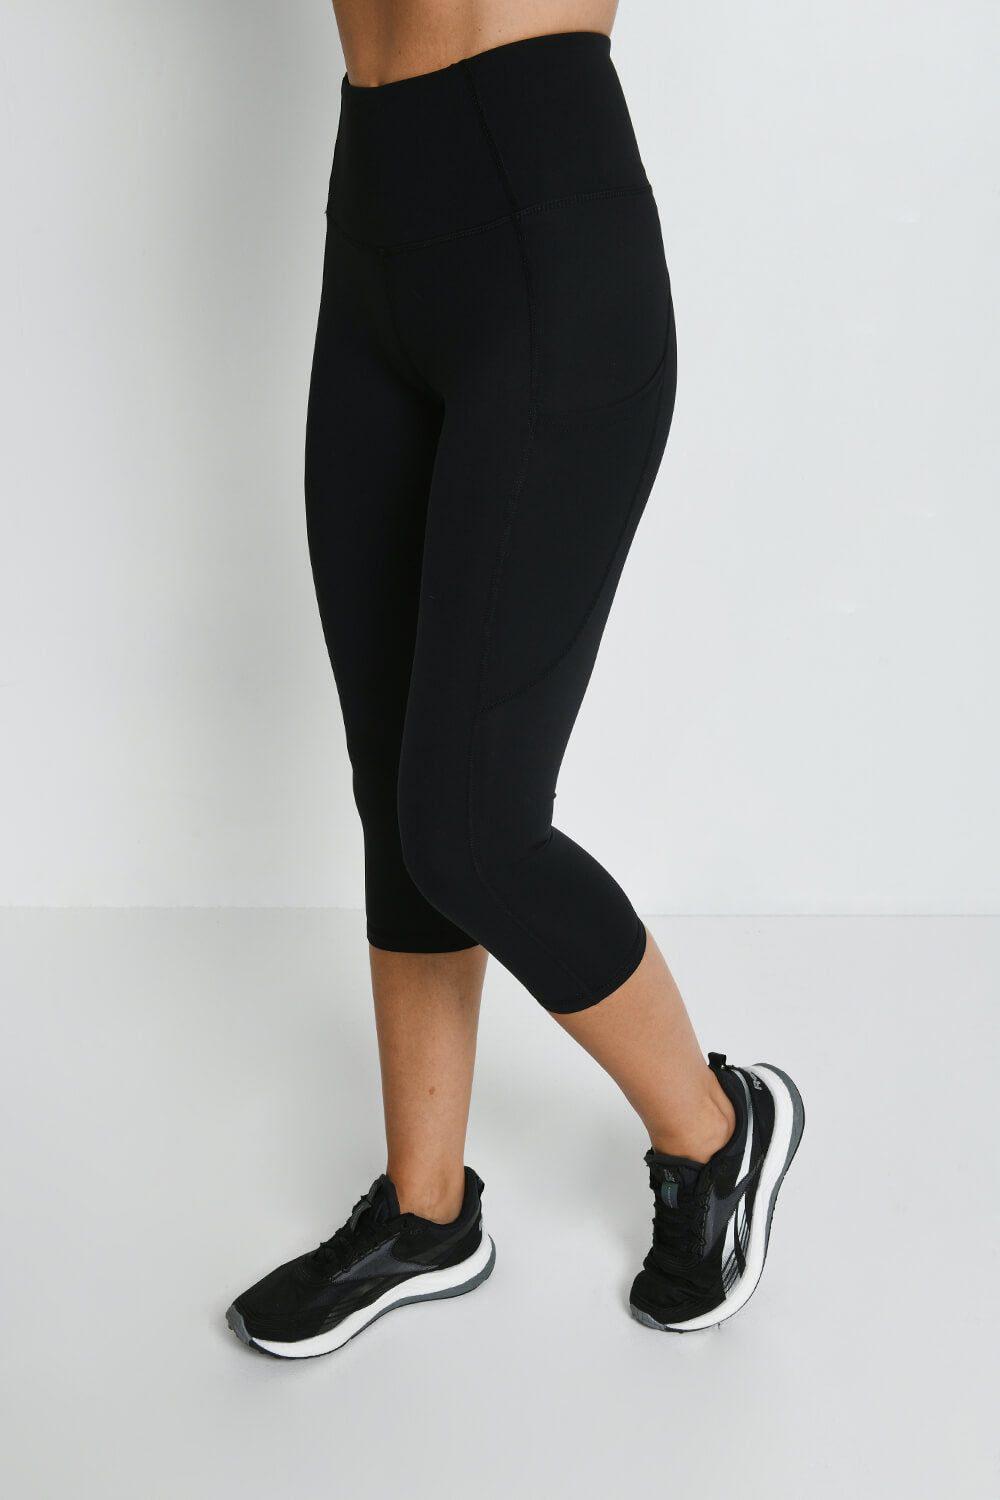 Guide To Buying The Best Women's Tights/Leggings | BARA Sportswear– BARA  Sportswear